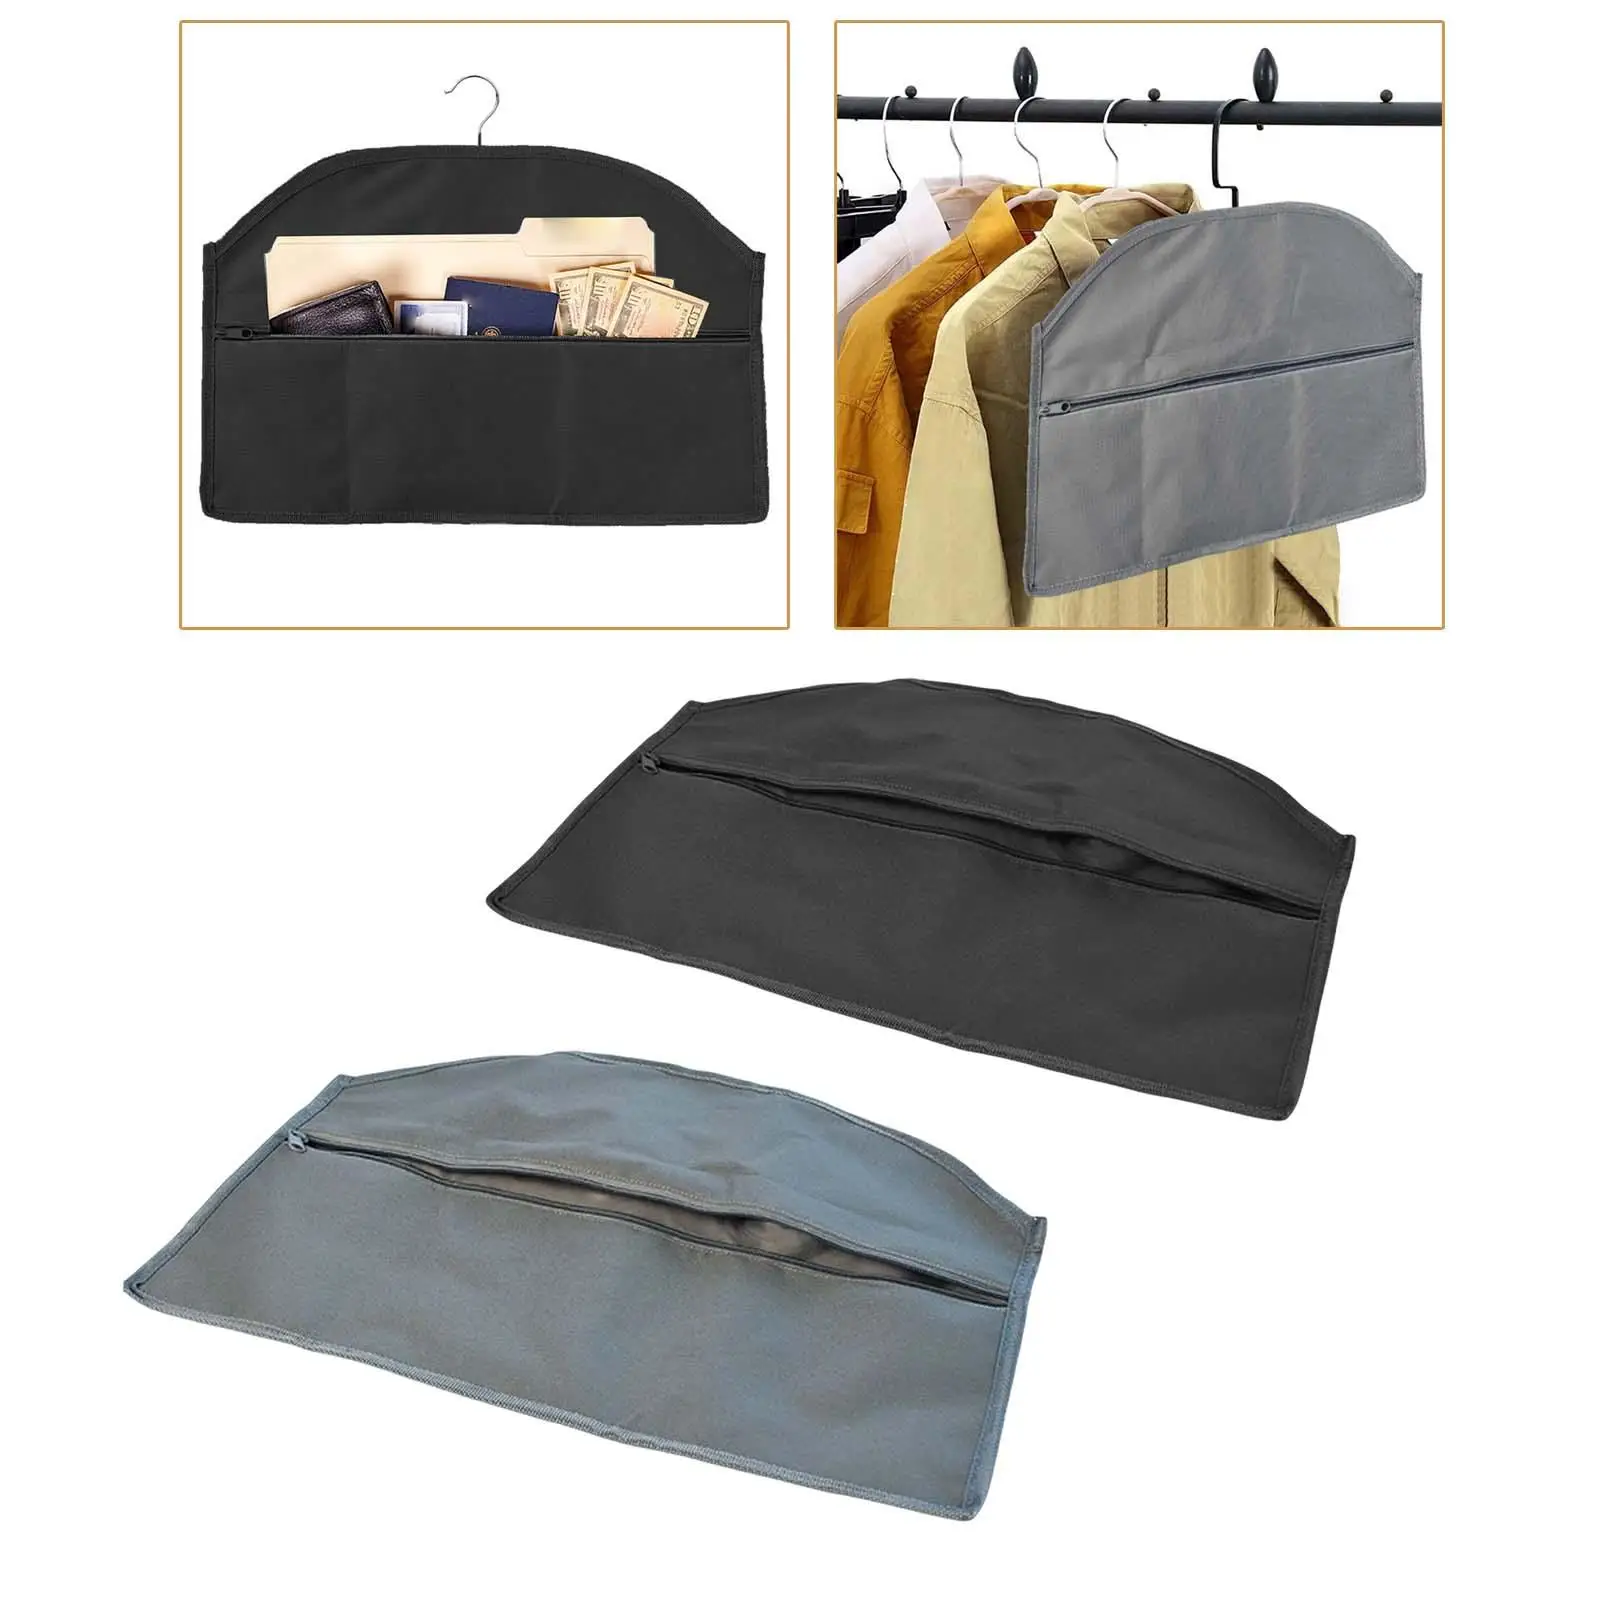 Water Resistant Hidden Pocket Fits Under Hanging Clothes Hanger Bag Hanger Diversion for Wardrobe Travel Conceals Valuables Cash